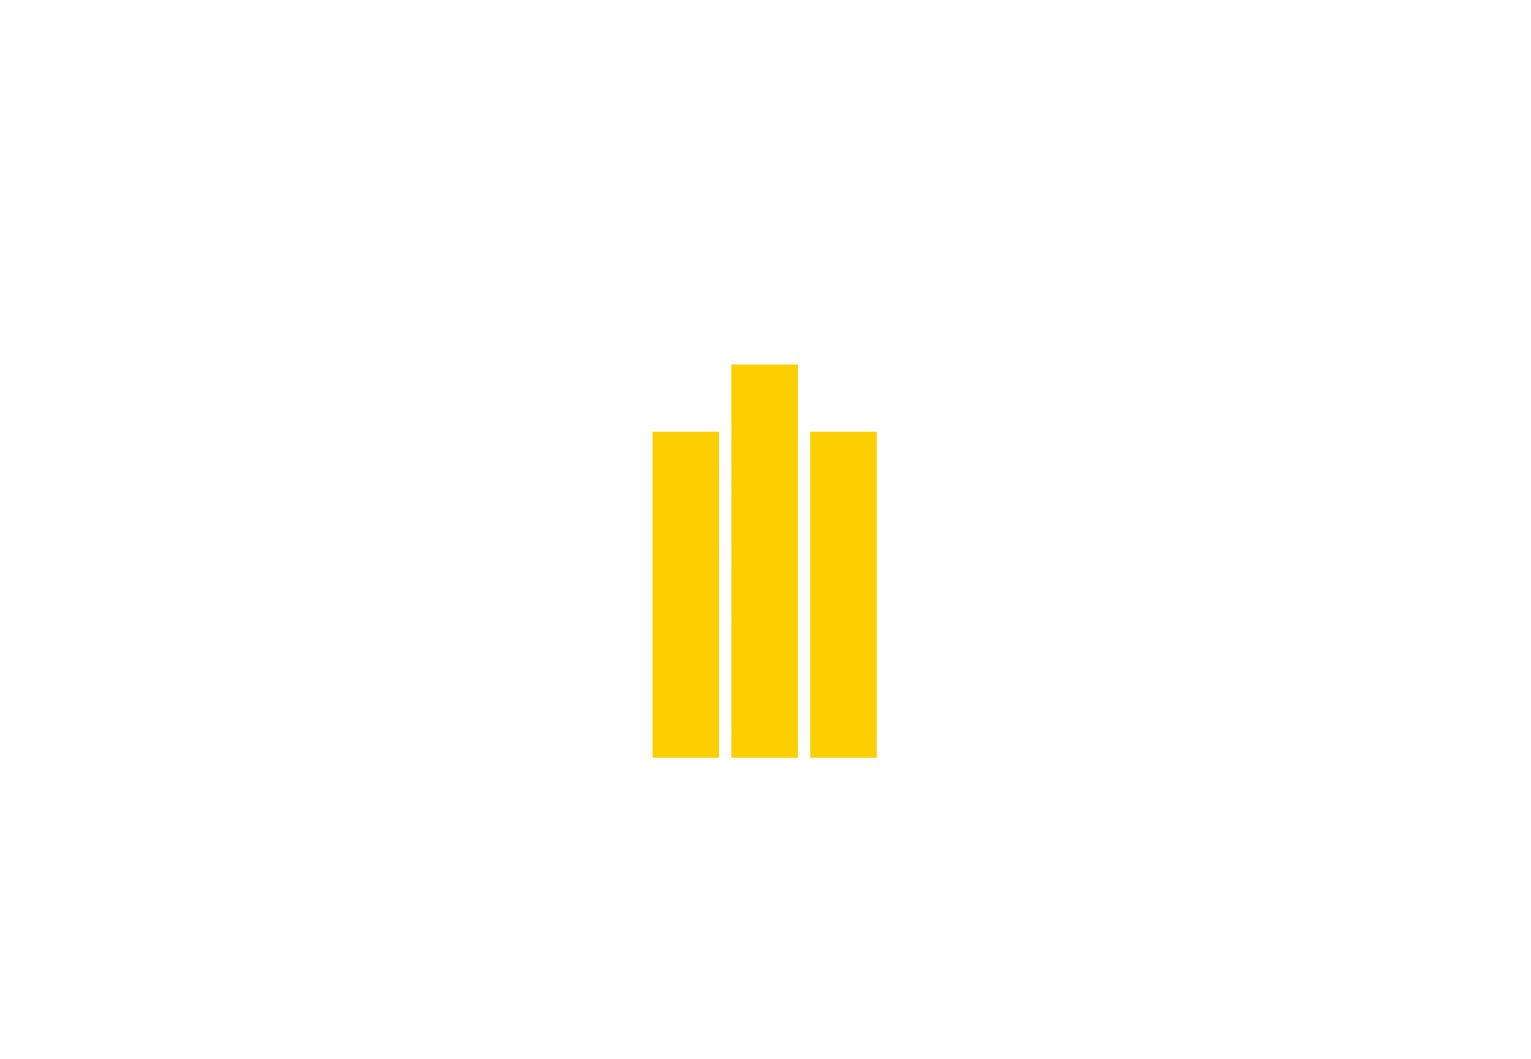 Rosneft logo large for dark backgrounds (transparent PNG)